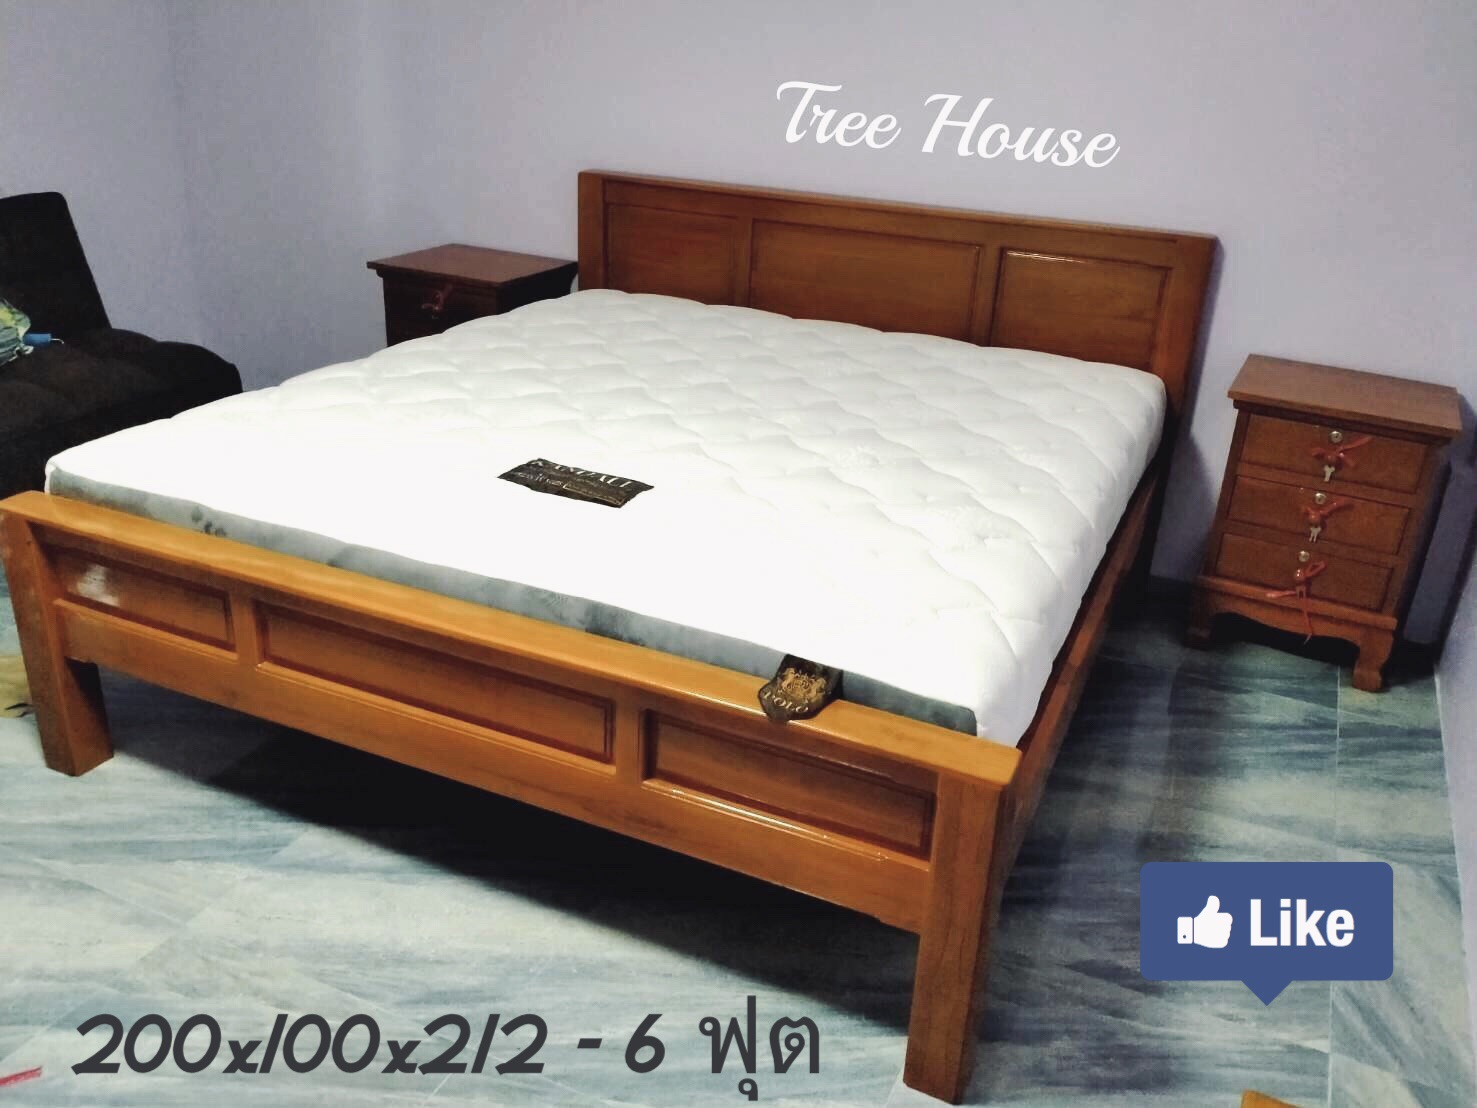 เตียงนอนไม้สัก ขนาด 6 ฟุต (ไม่รวมที่นอน) ฟรีค่าจัดส่ง!! ร้าน.Tree House เฟอร์นิเจอร์และของแต่งบ้านไม้สัก